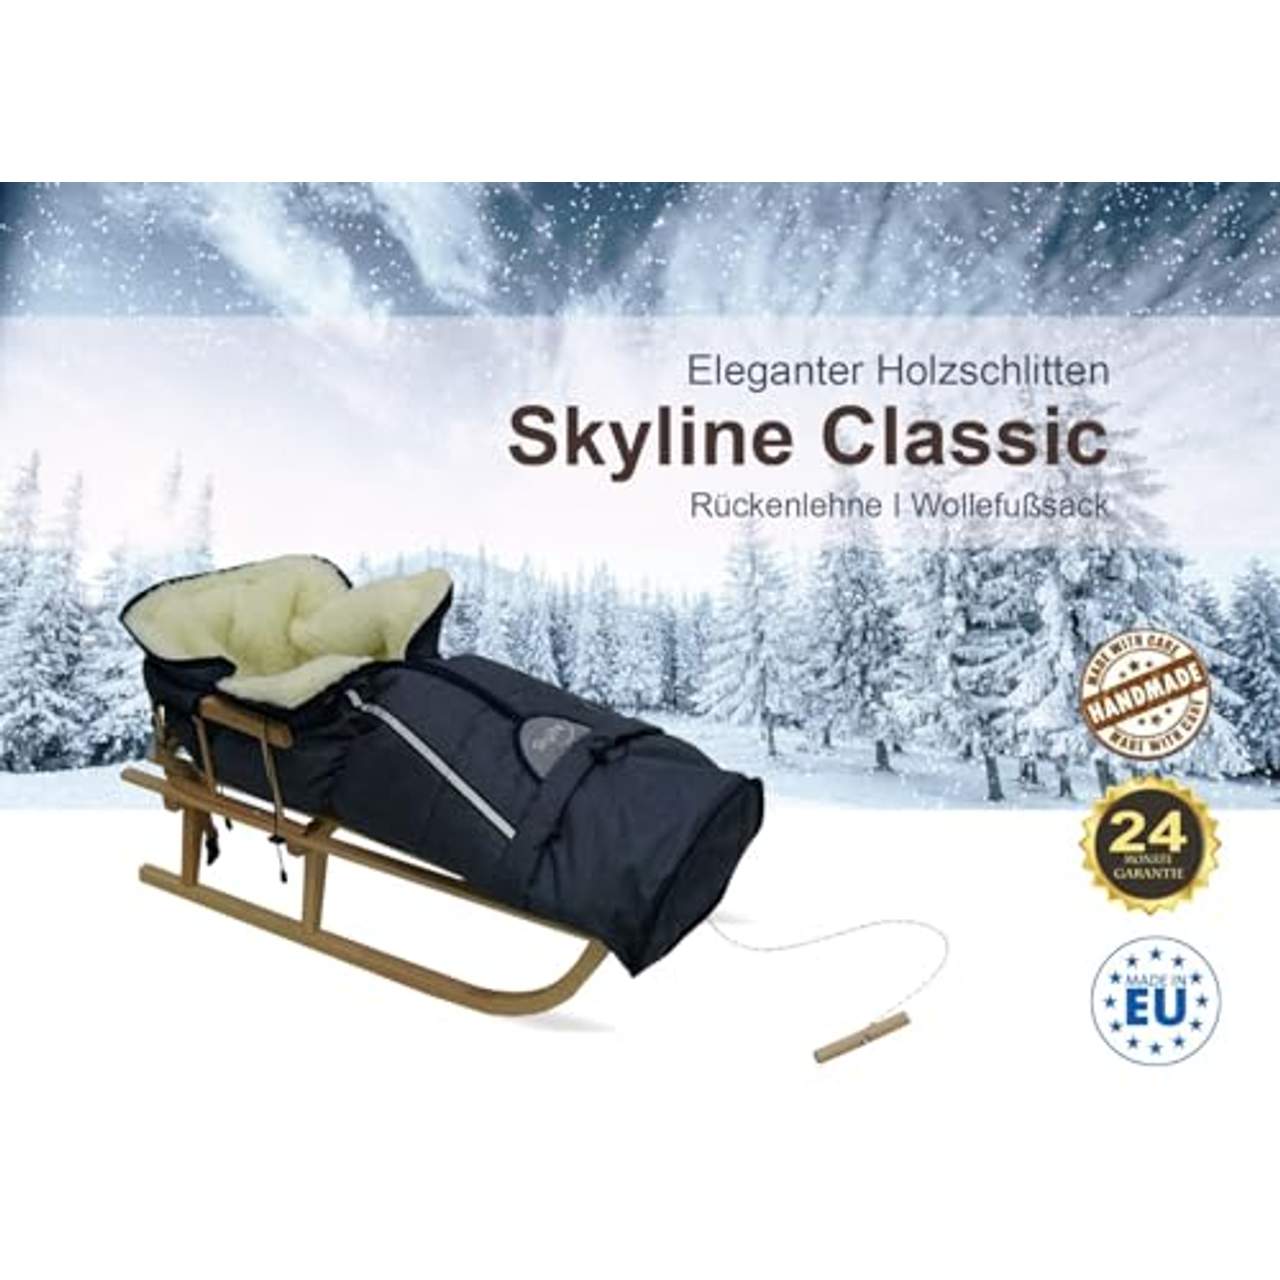 Skyline Holzschlitten für Kinder mit Rückenlehne Rodelschlitten Davoser Schlitten